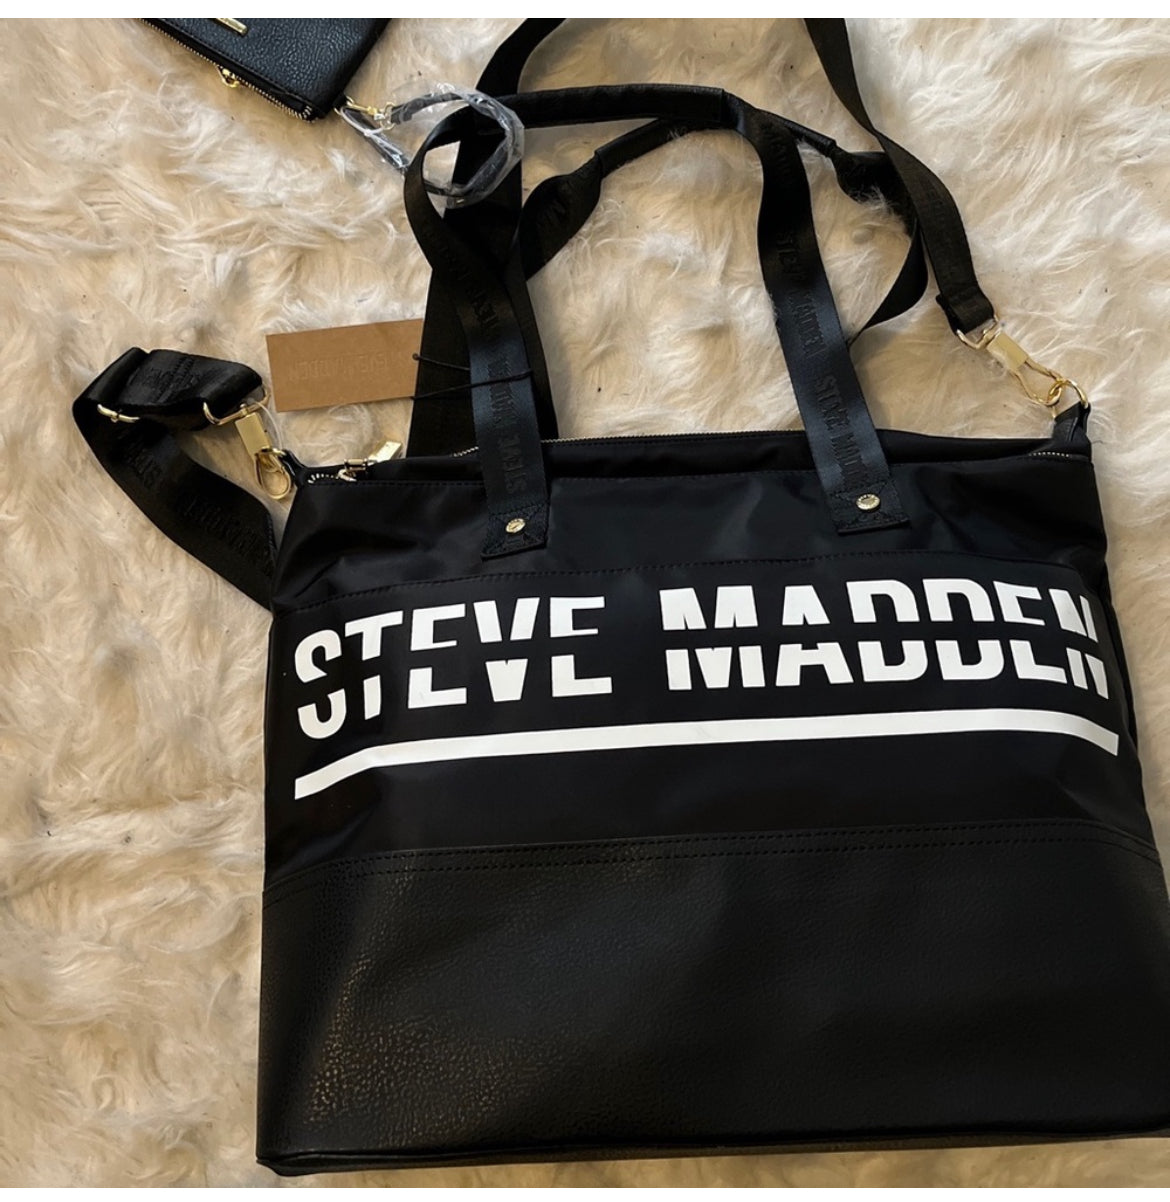 STEVE MADDEN DUFFLE BAG